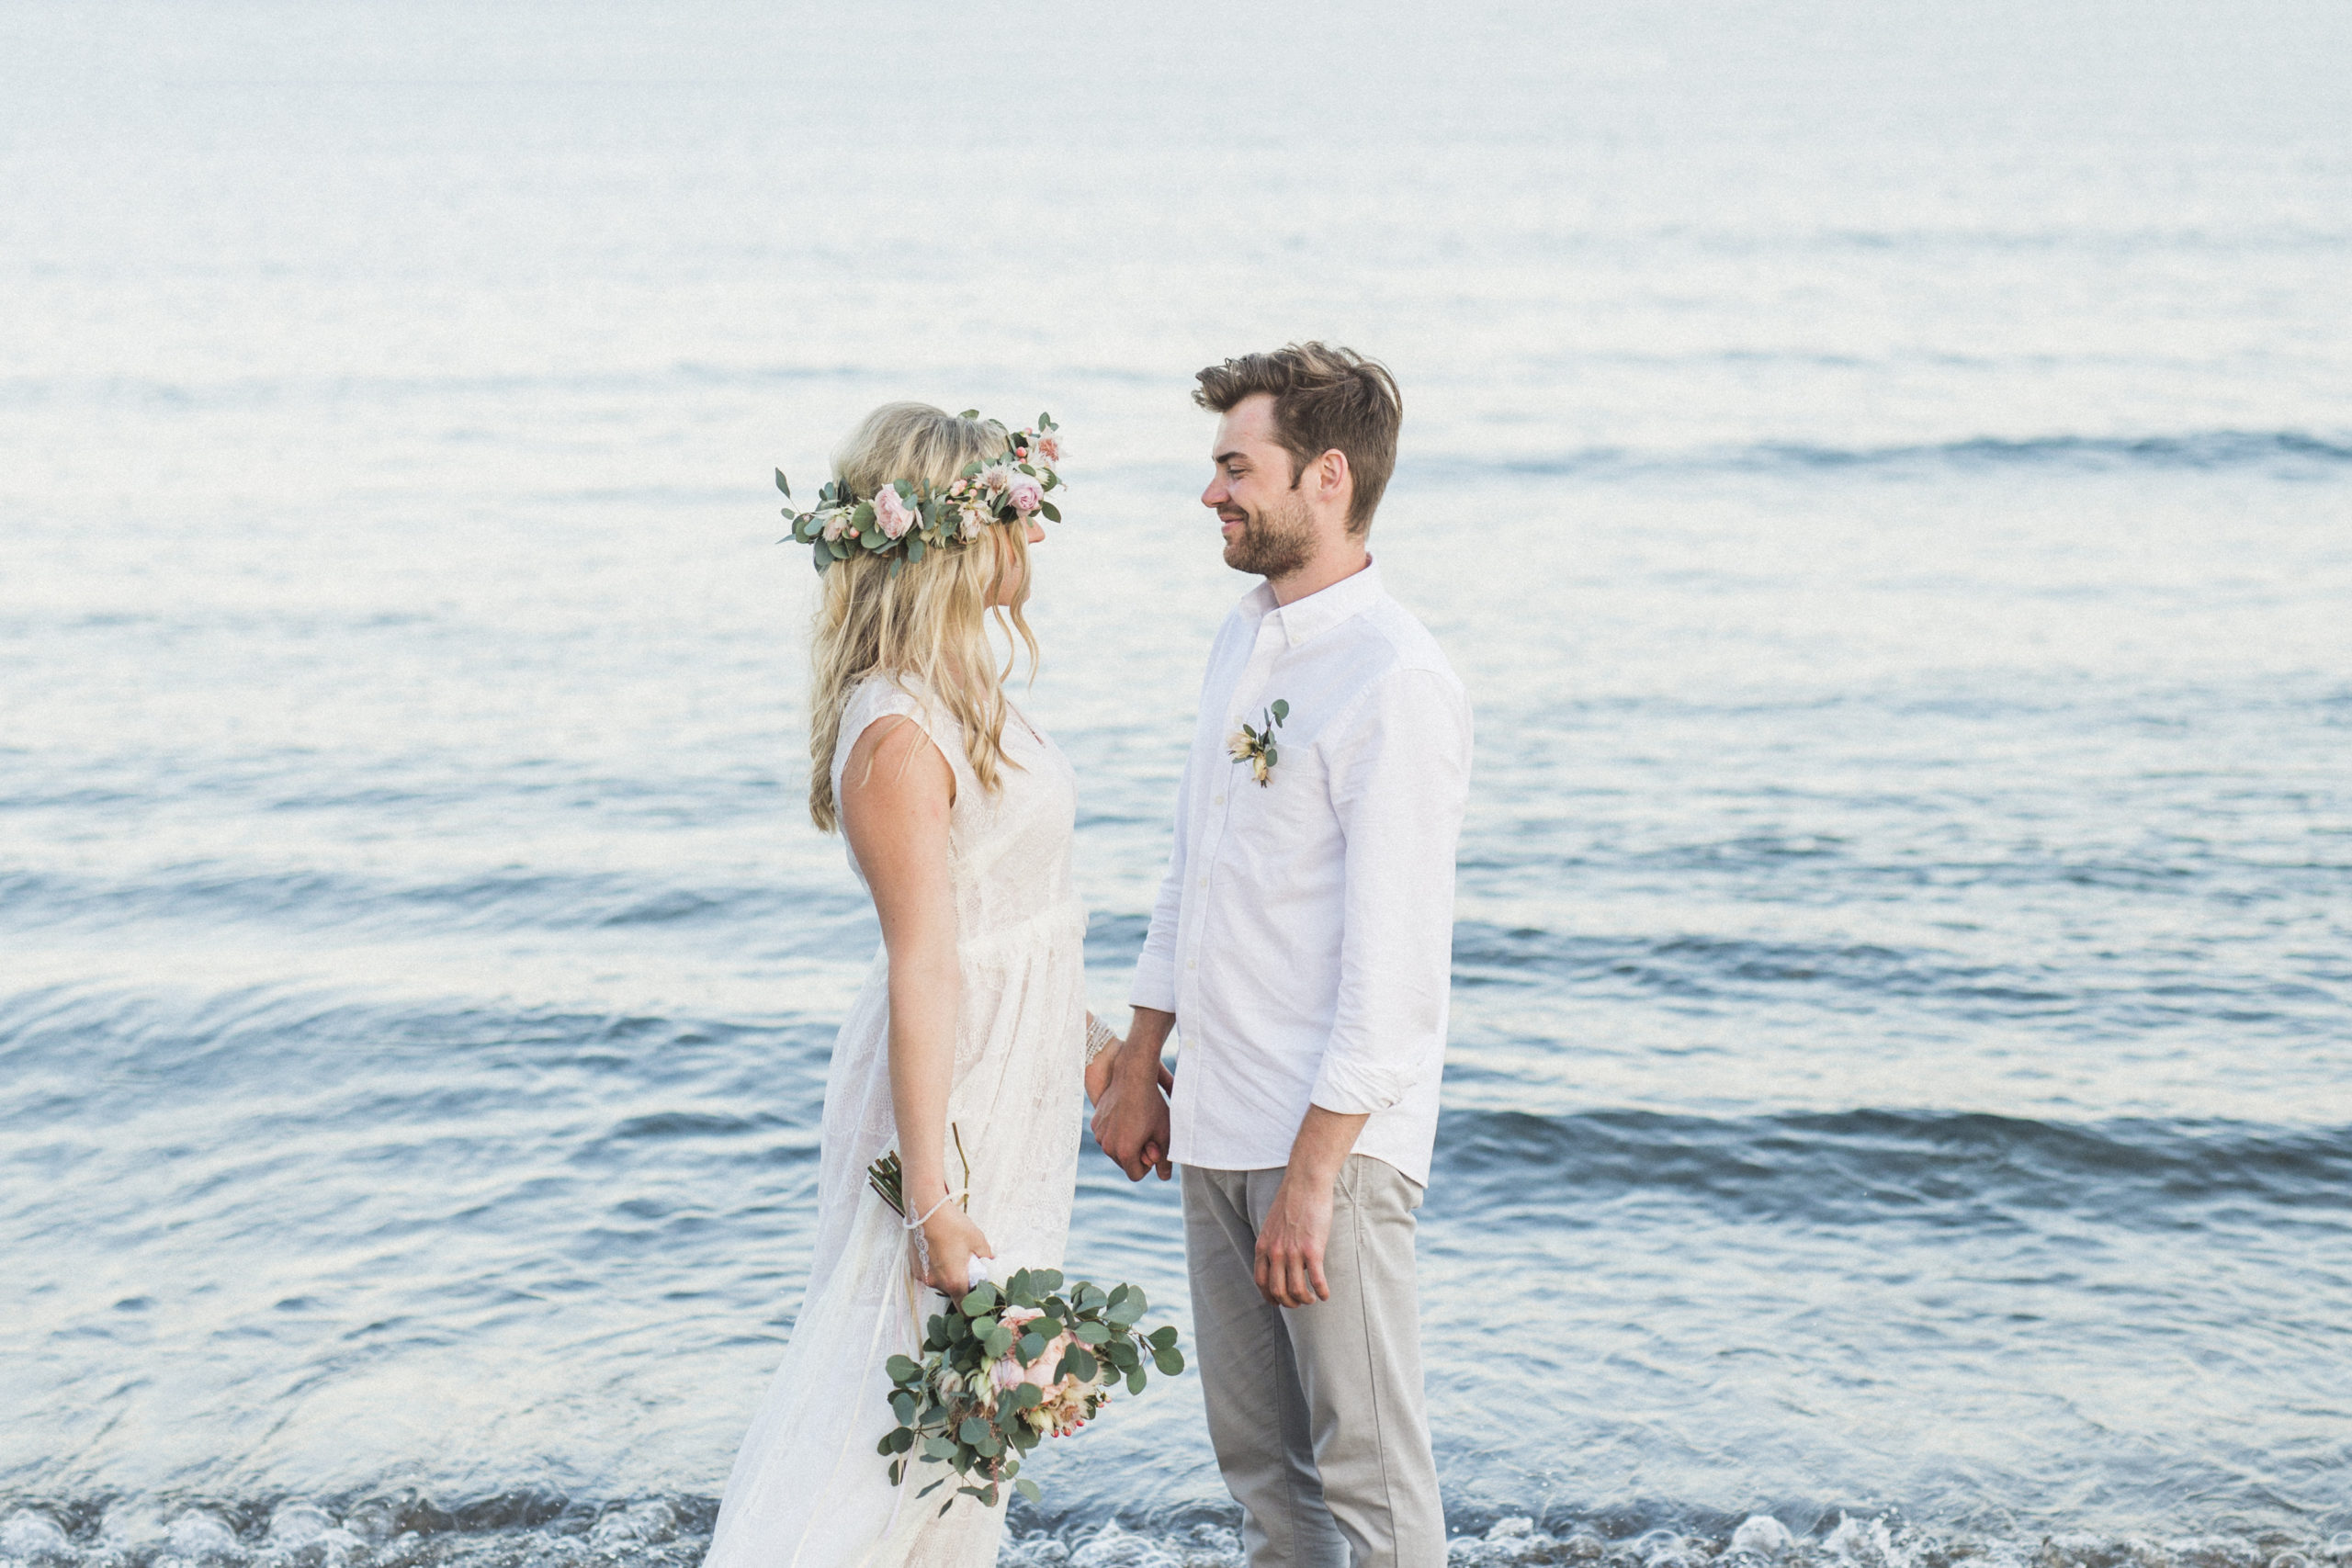 Hach, diese Hochzeit zu zweit am Strand – entspannter geht es nicht!